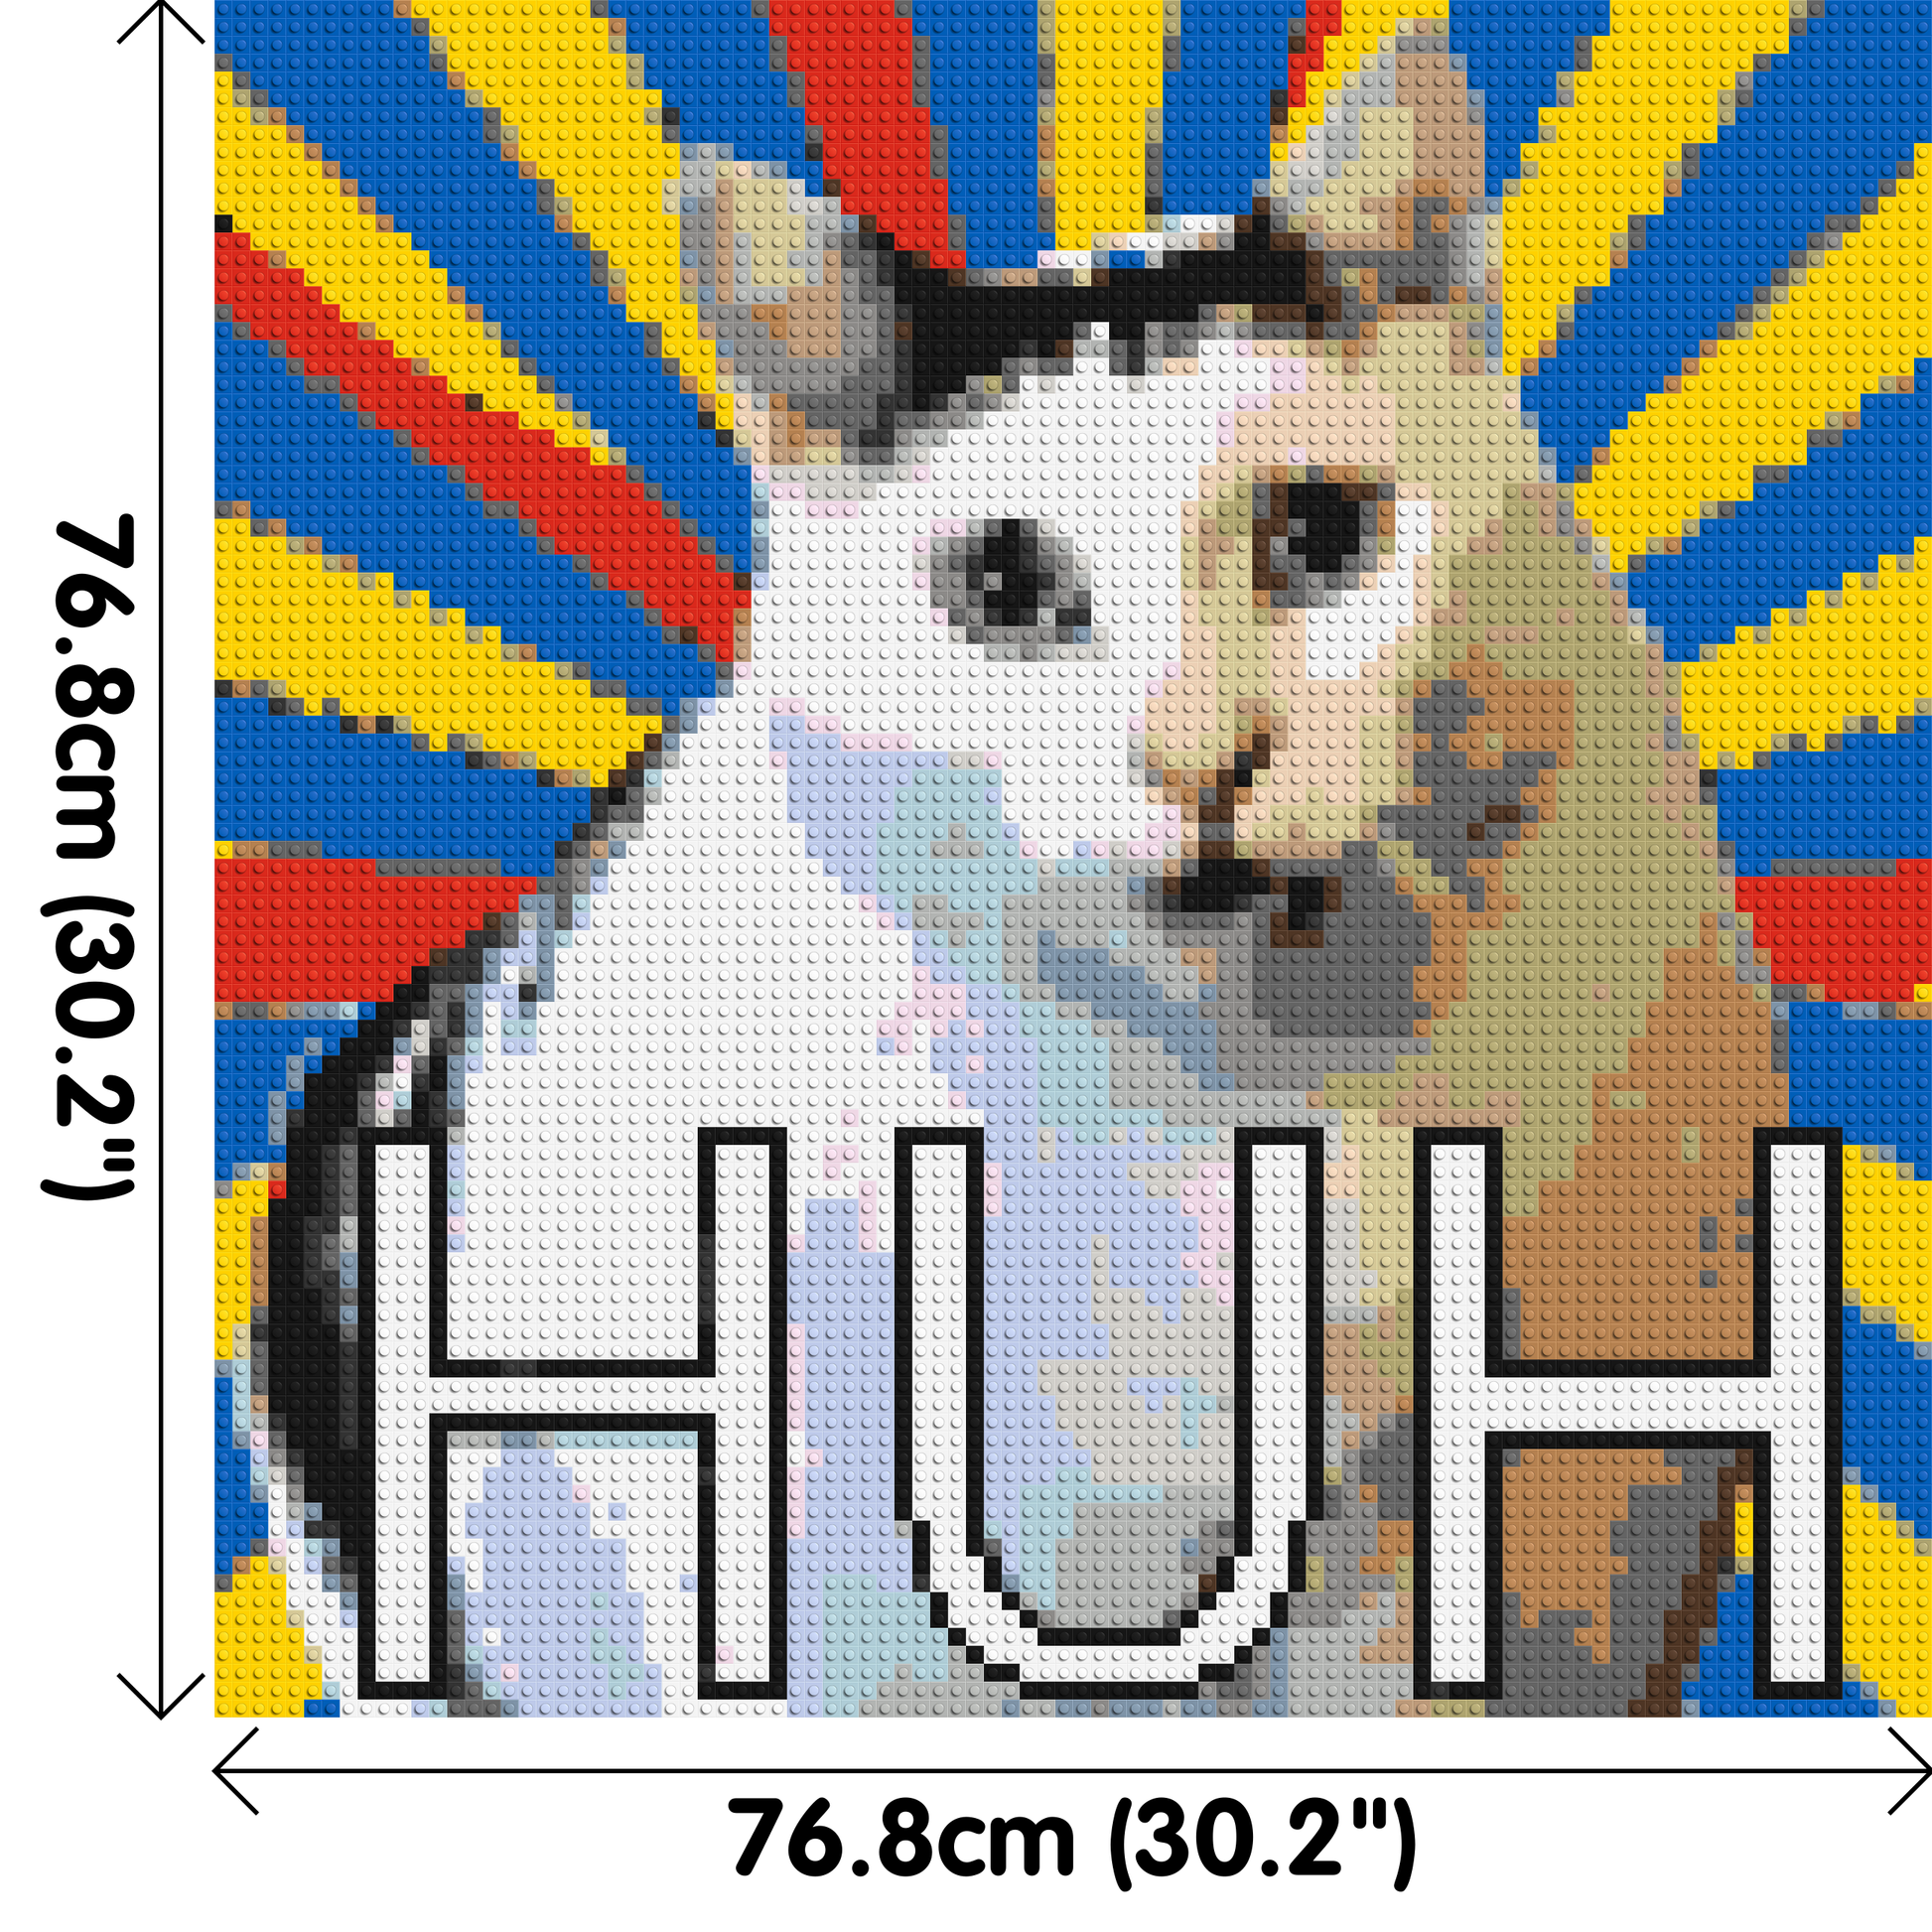 Huh Cat Meme - Brick Art Mosaic Kit 4x4 dimensions